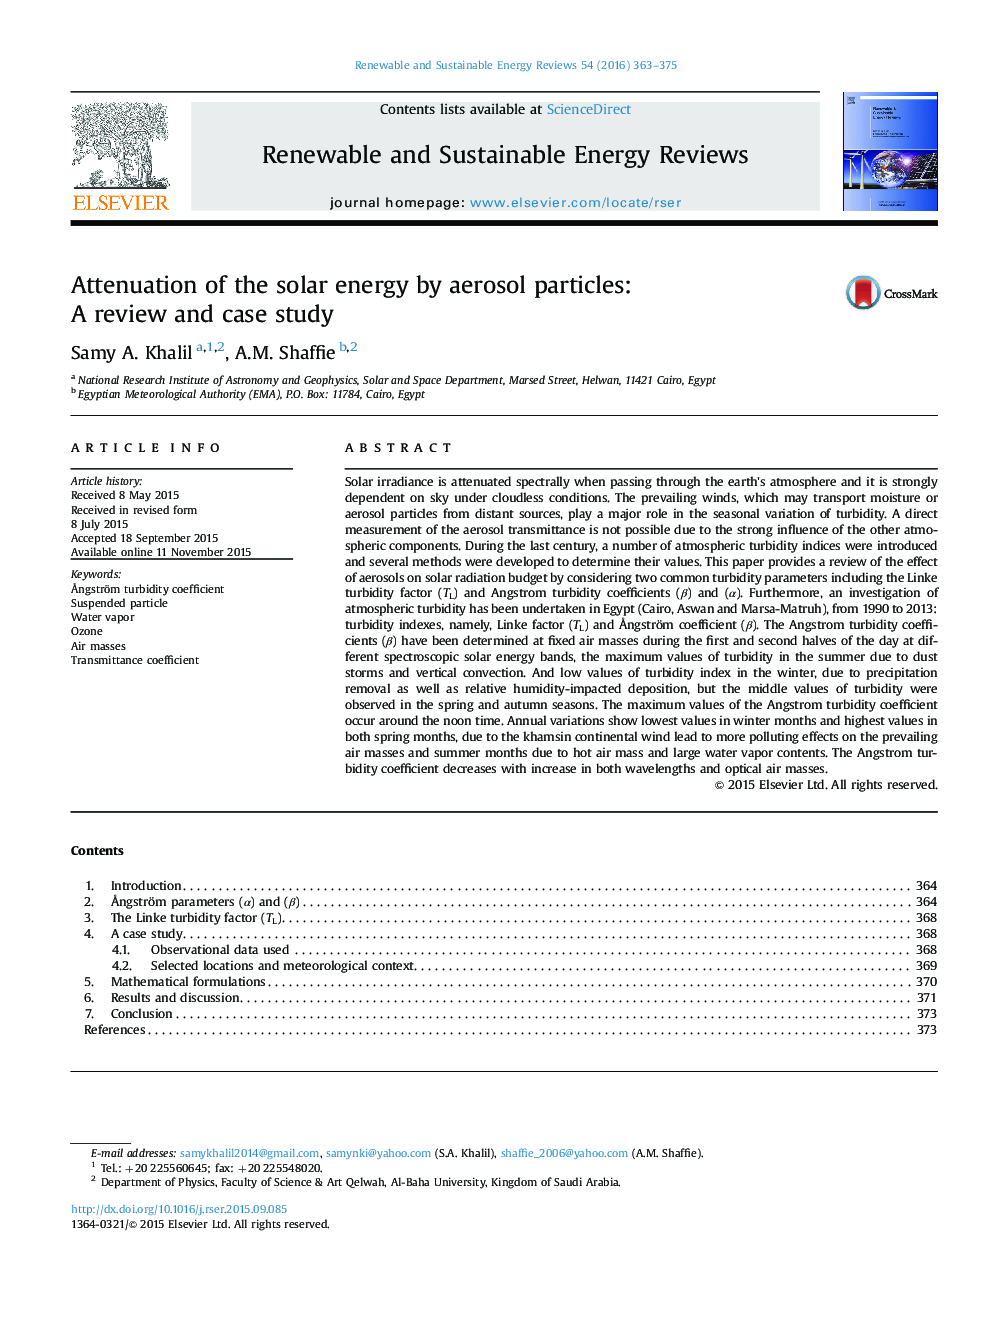 تضعیف انرژی خورشیدی توسط ذرات آئروسل: بررسی و مطالعه موردی 